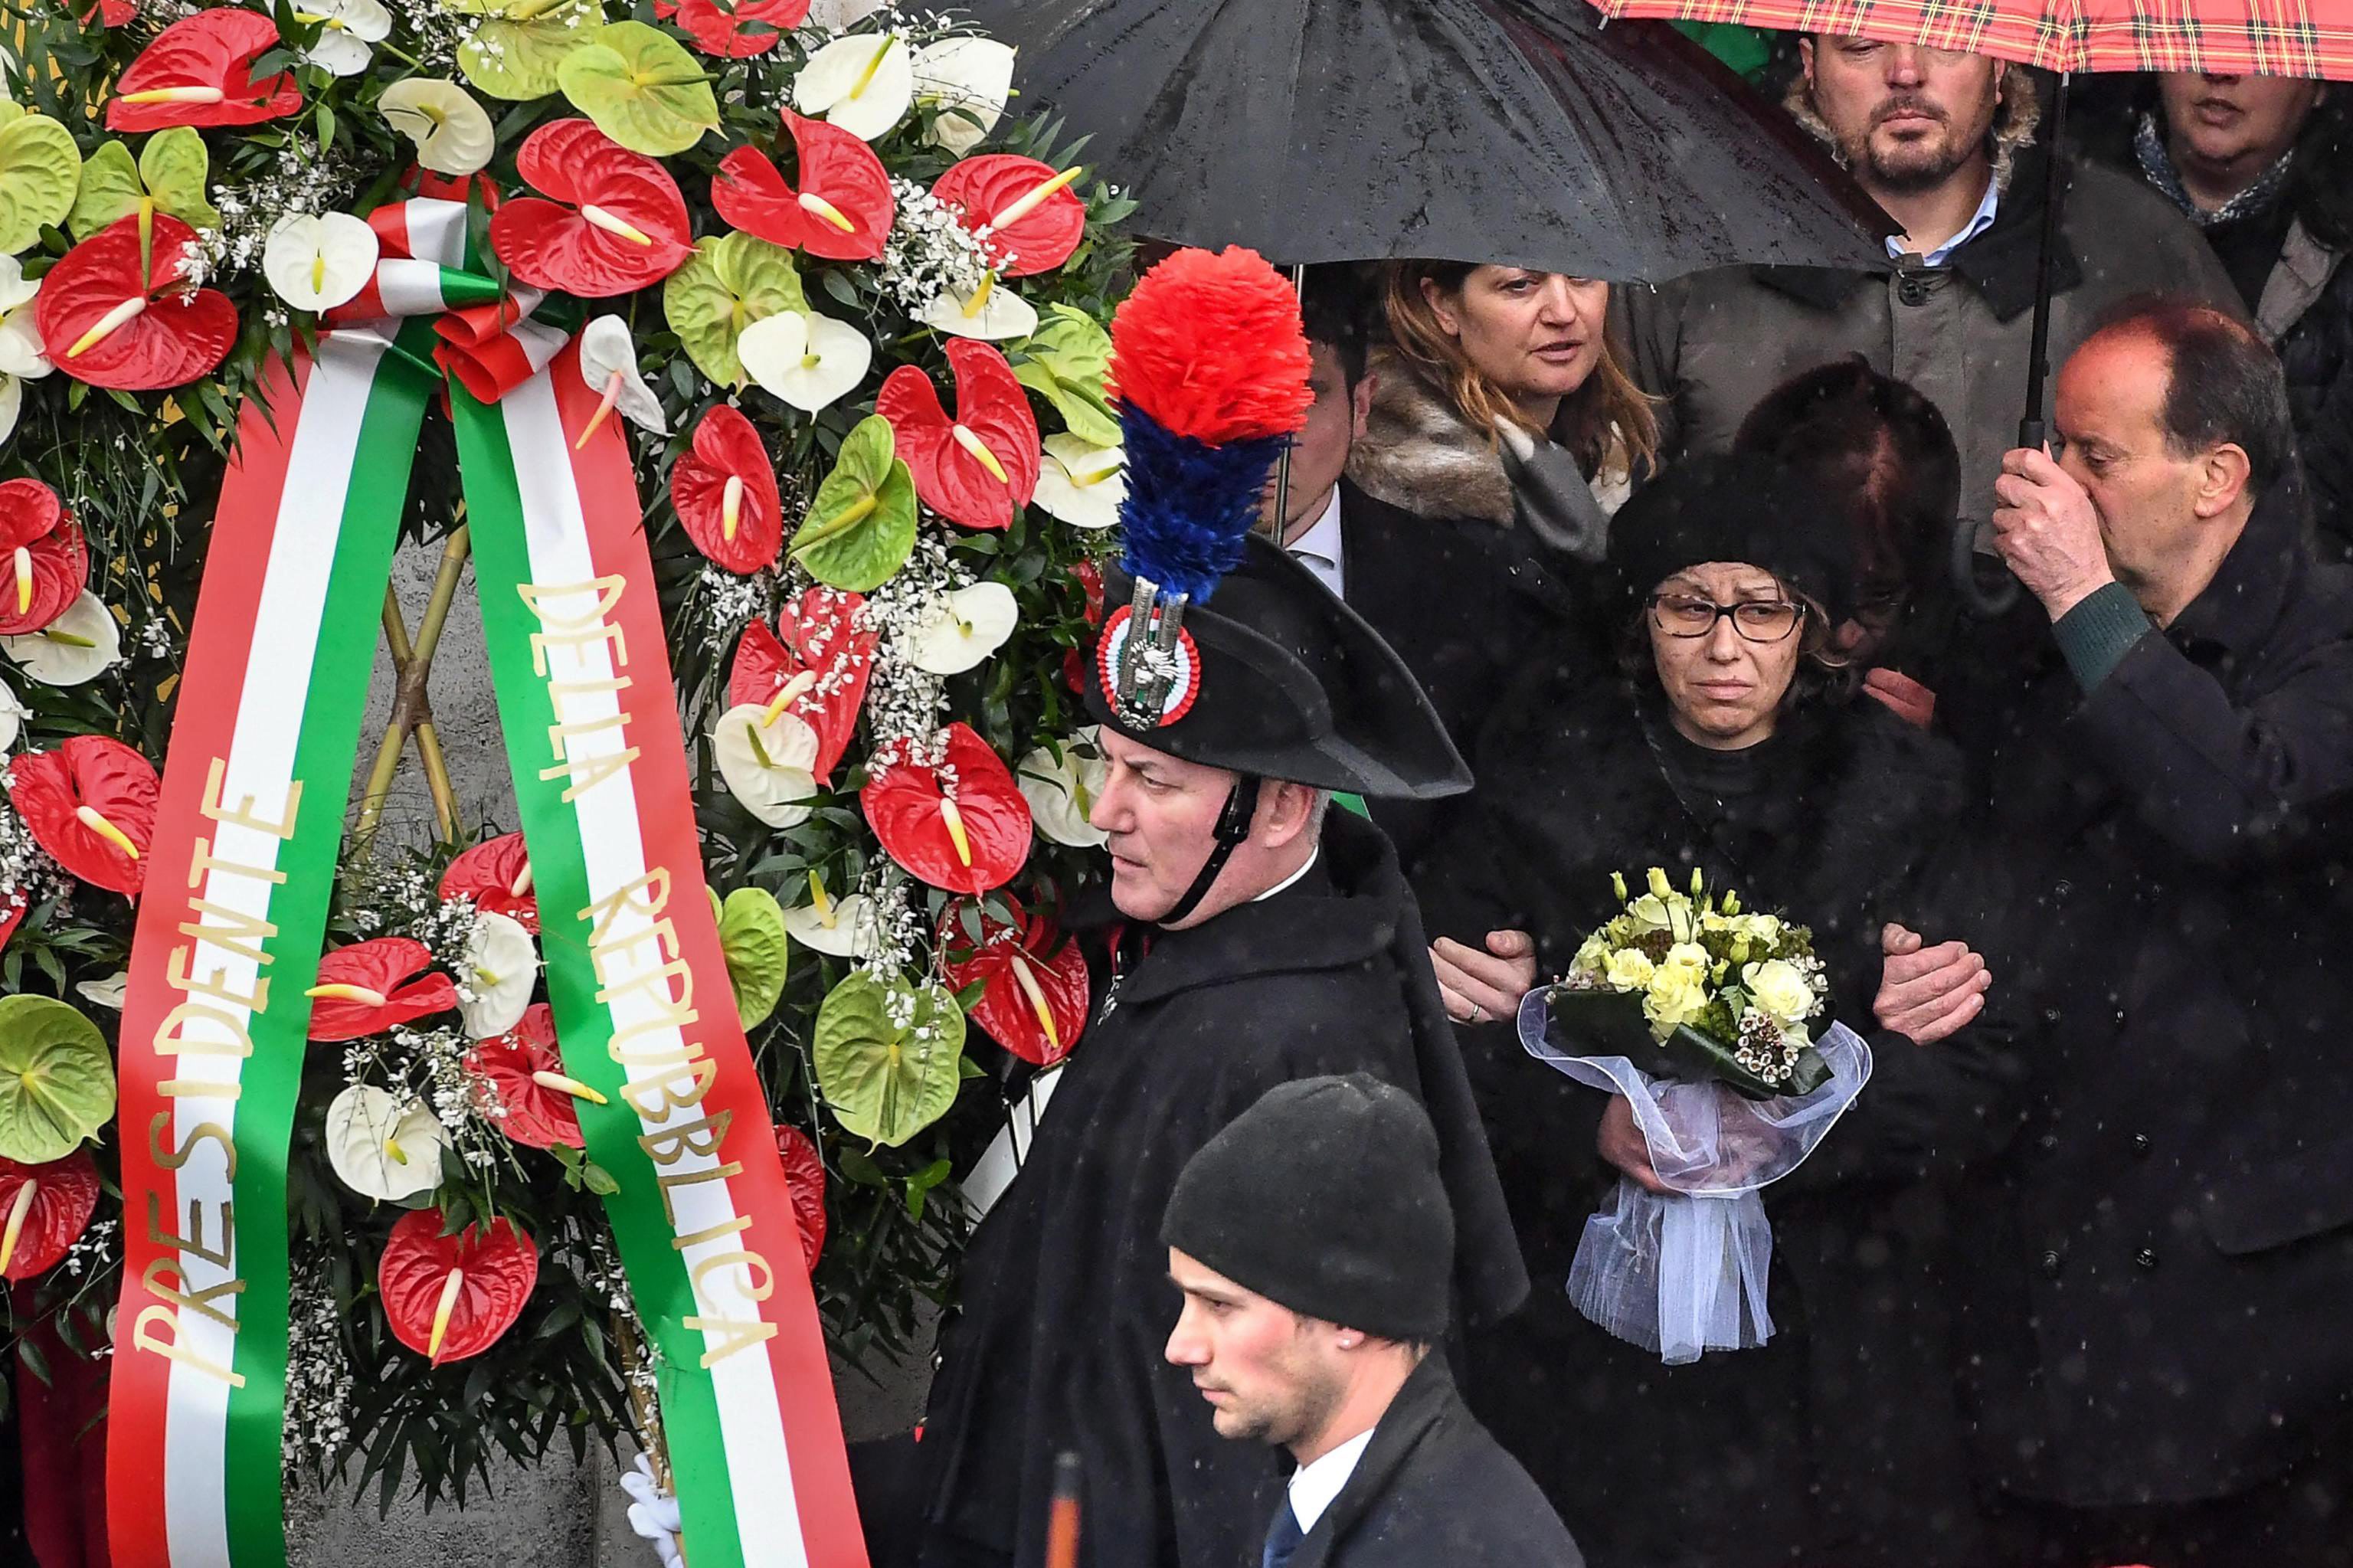 Στους 24 οι νεκροί από τη χιονοστιβάδα στο ιταλικό ξενοδοχείο